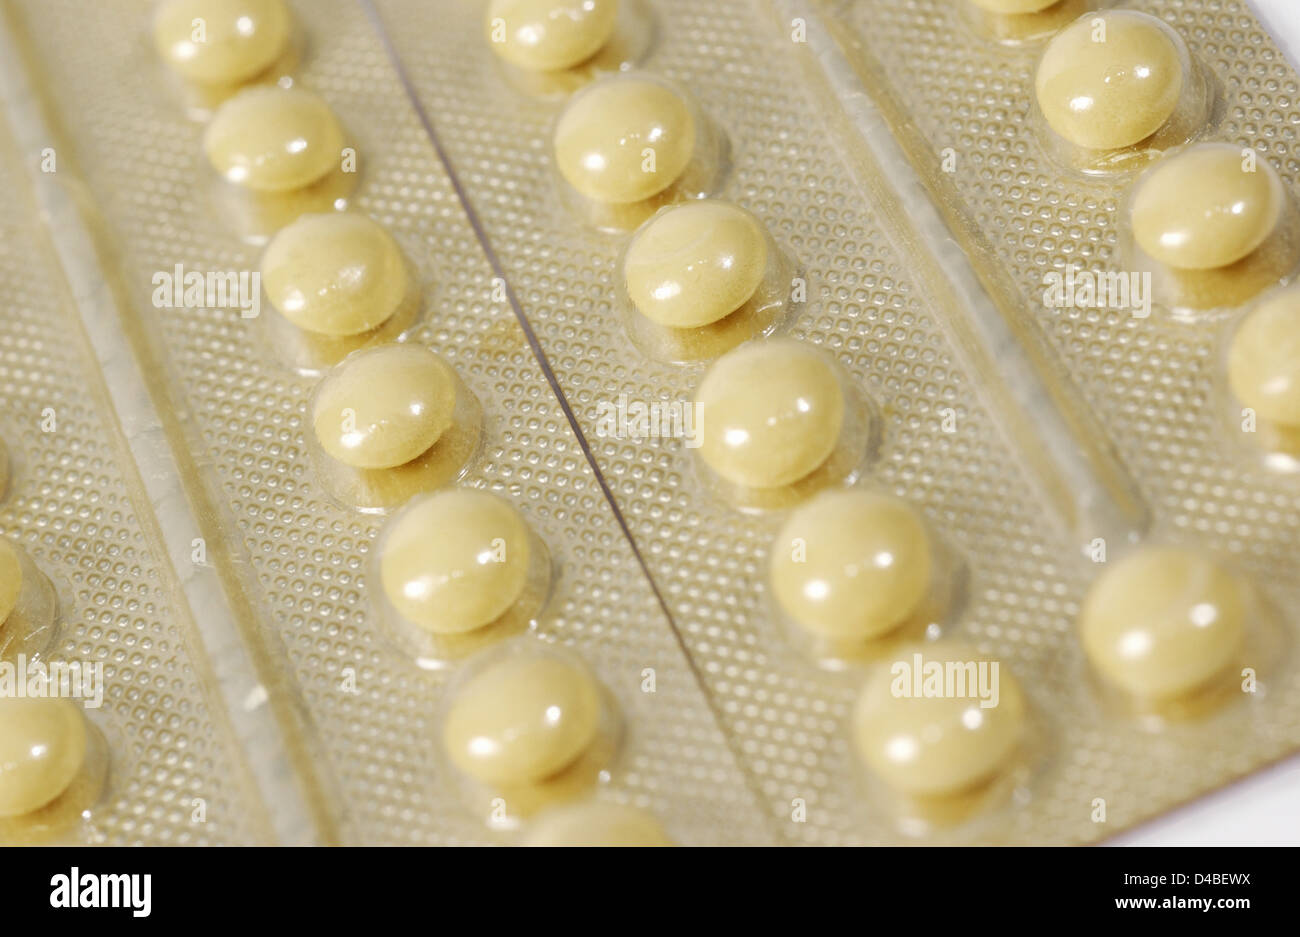 Une pilule contraceptive contient des hormones synthétiques qui distrupt le fonctionnement normal du système de reproduction ciblant Banque D'Images